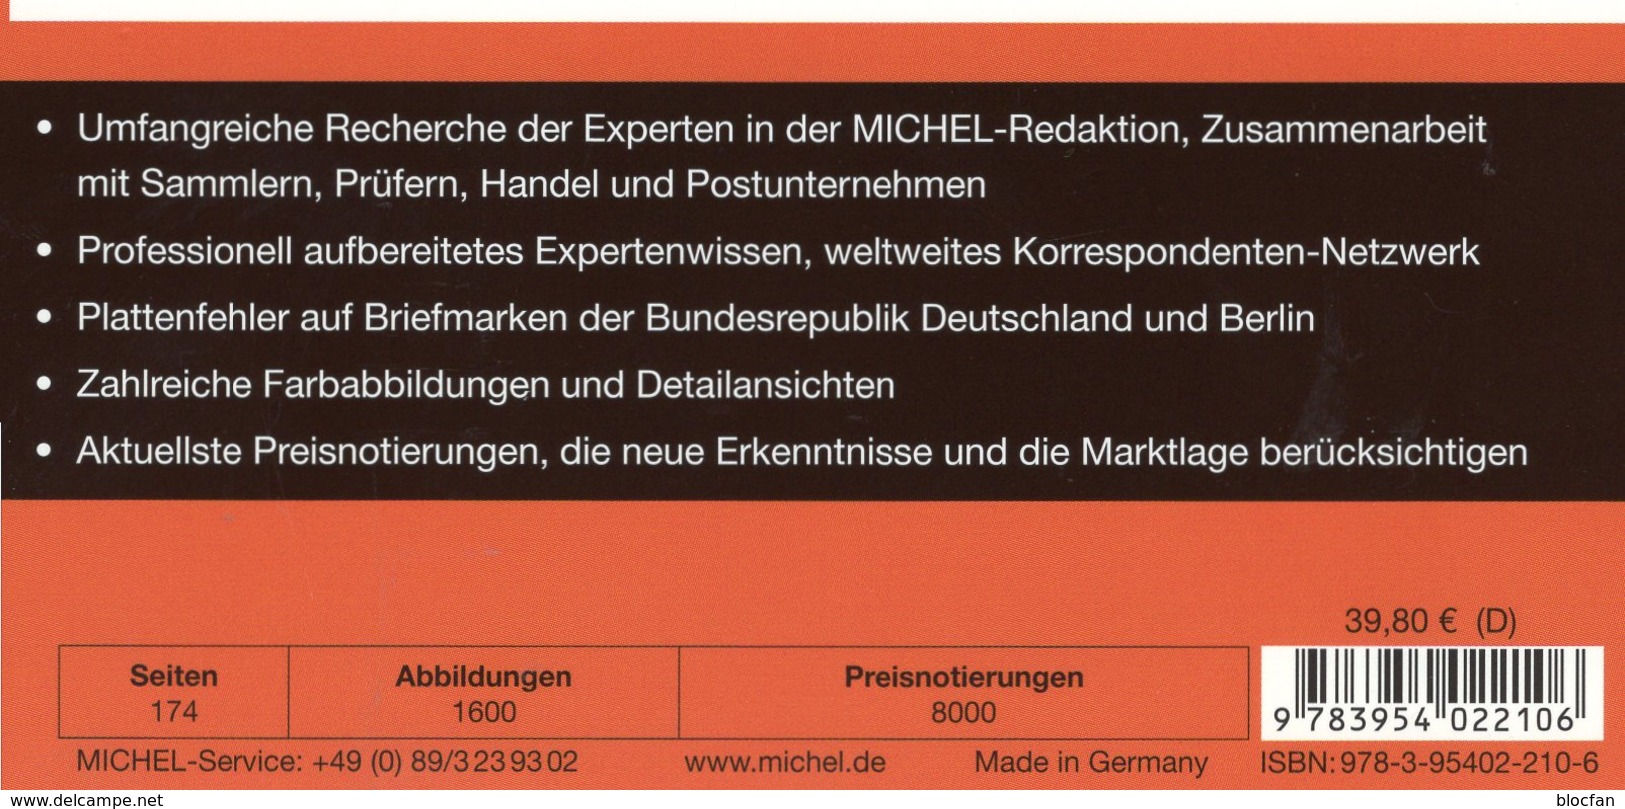 MICHEL Plattenfehler BUND Berlin New 2018 40€ Spezial-Katalog Fehler Auf Briefmarken Error Stamps Catalogue Germany - Allemagne